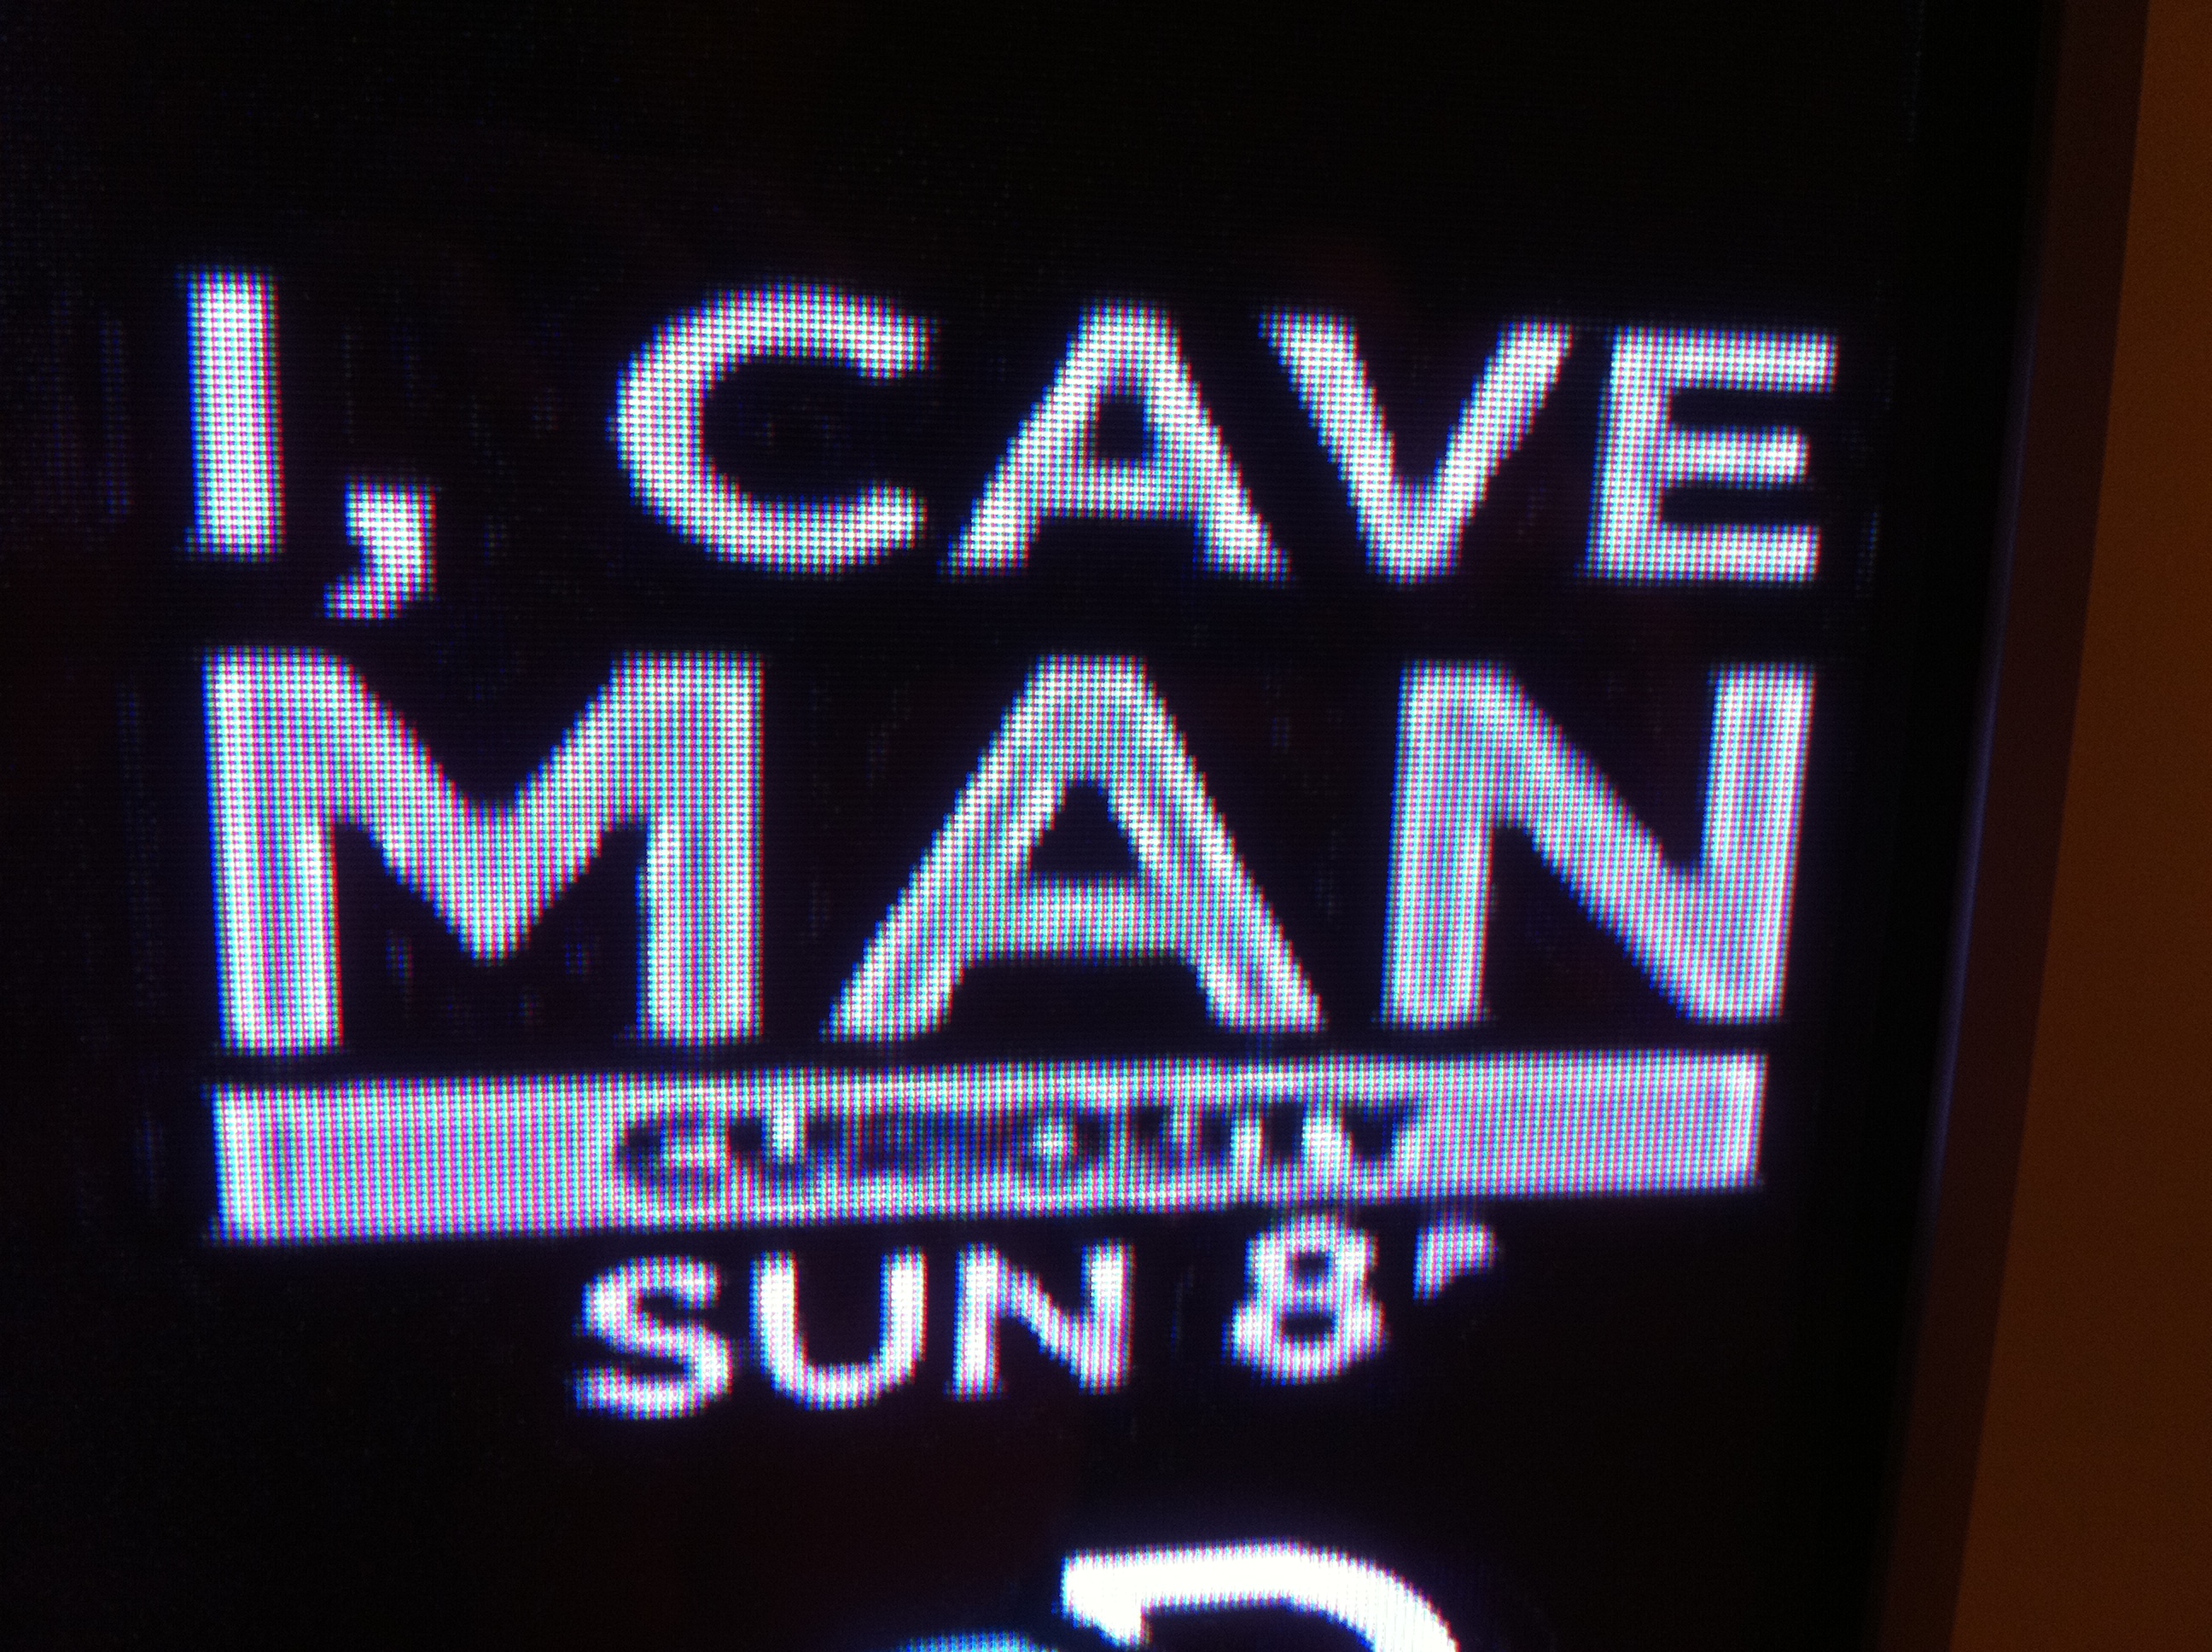 I Caveman